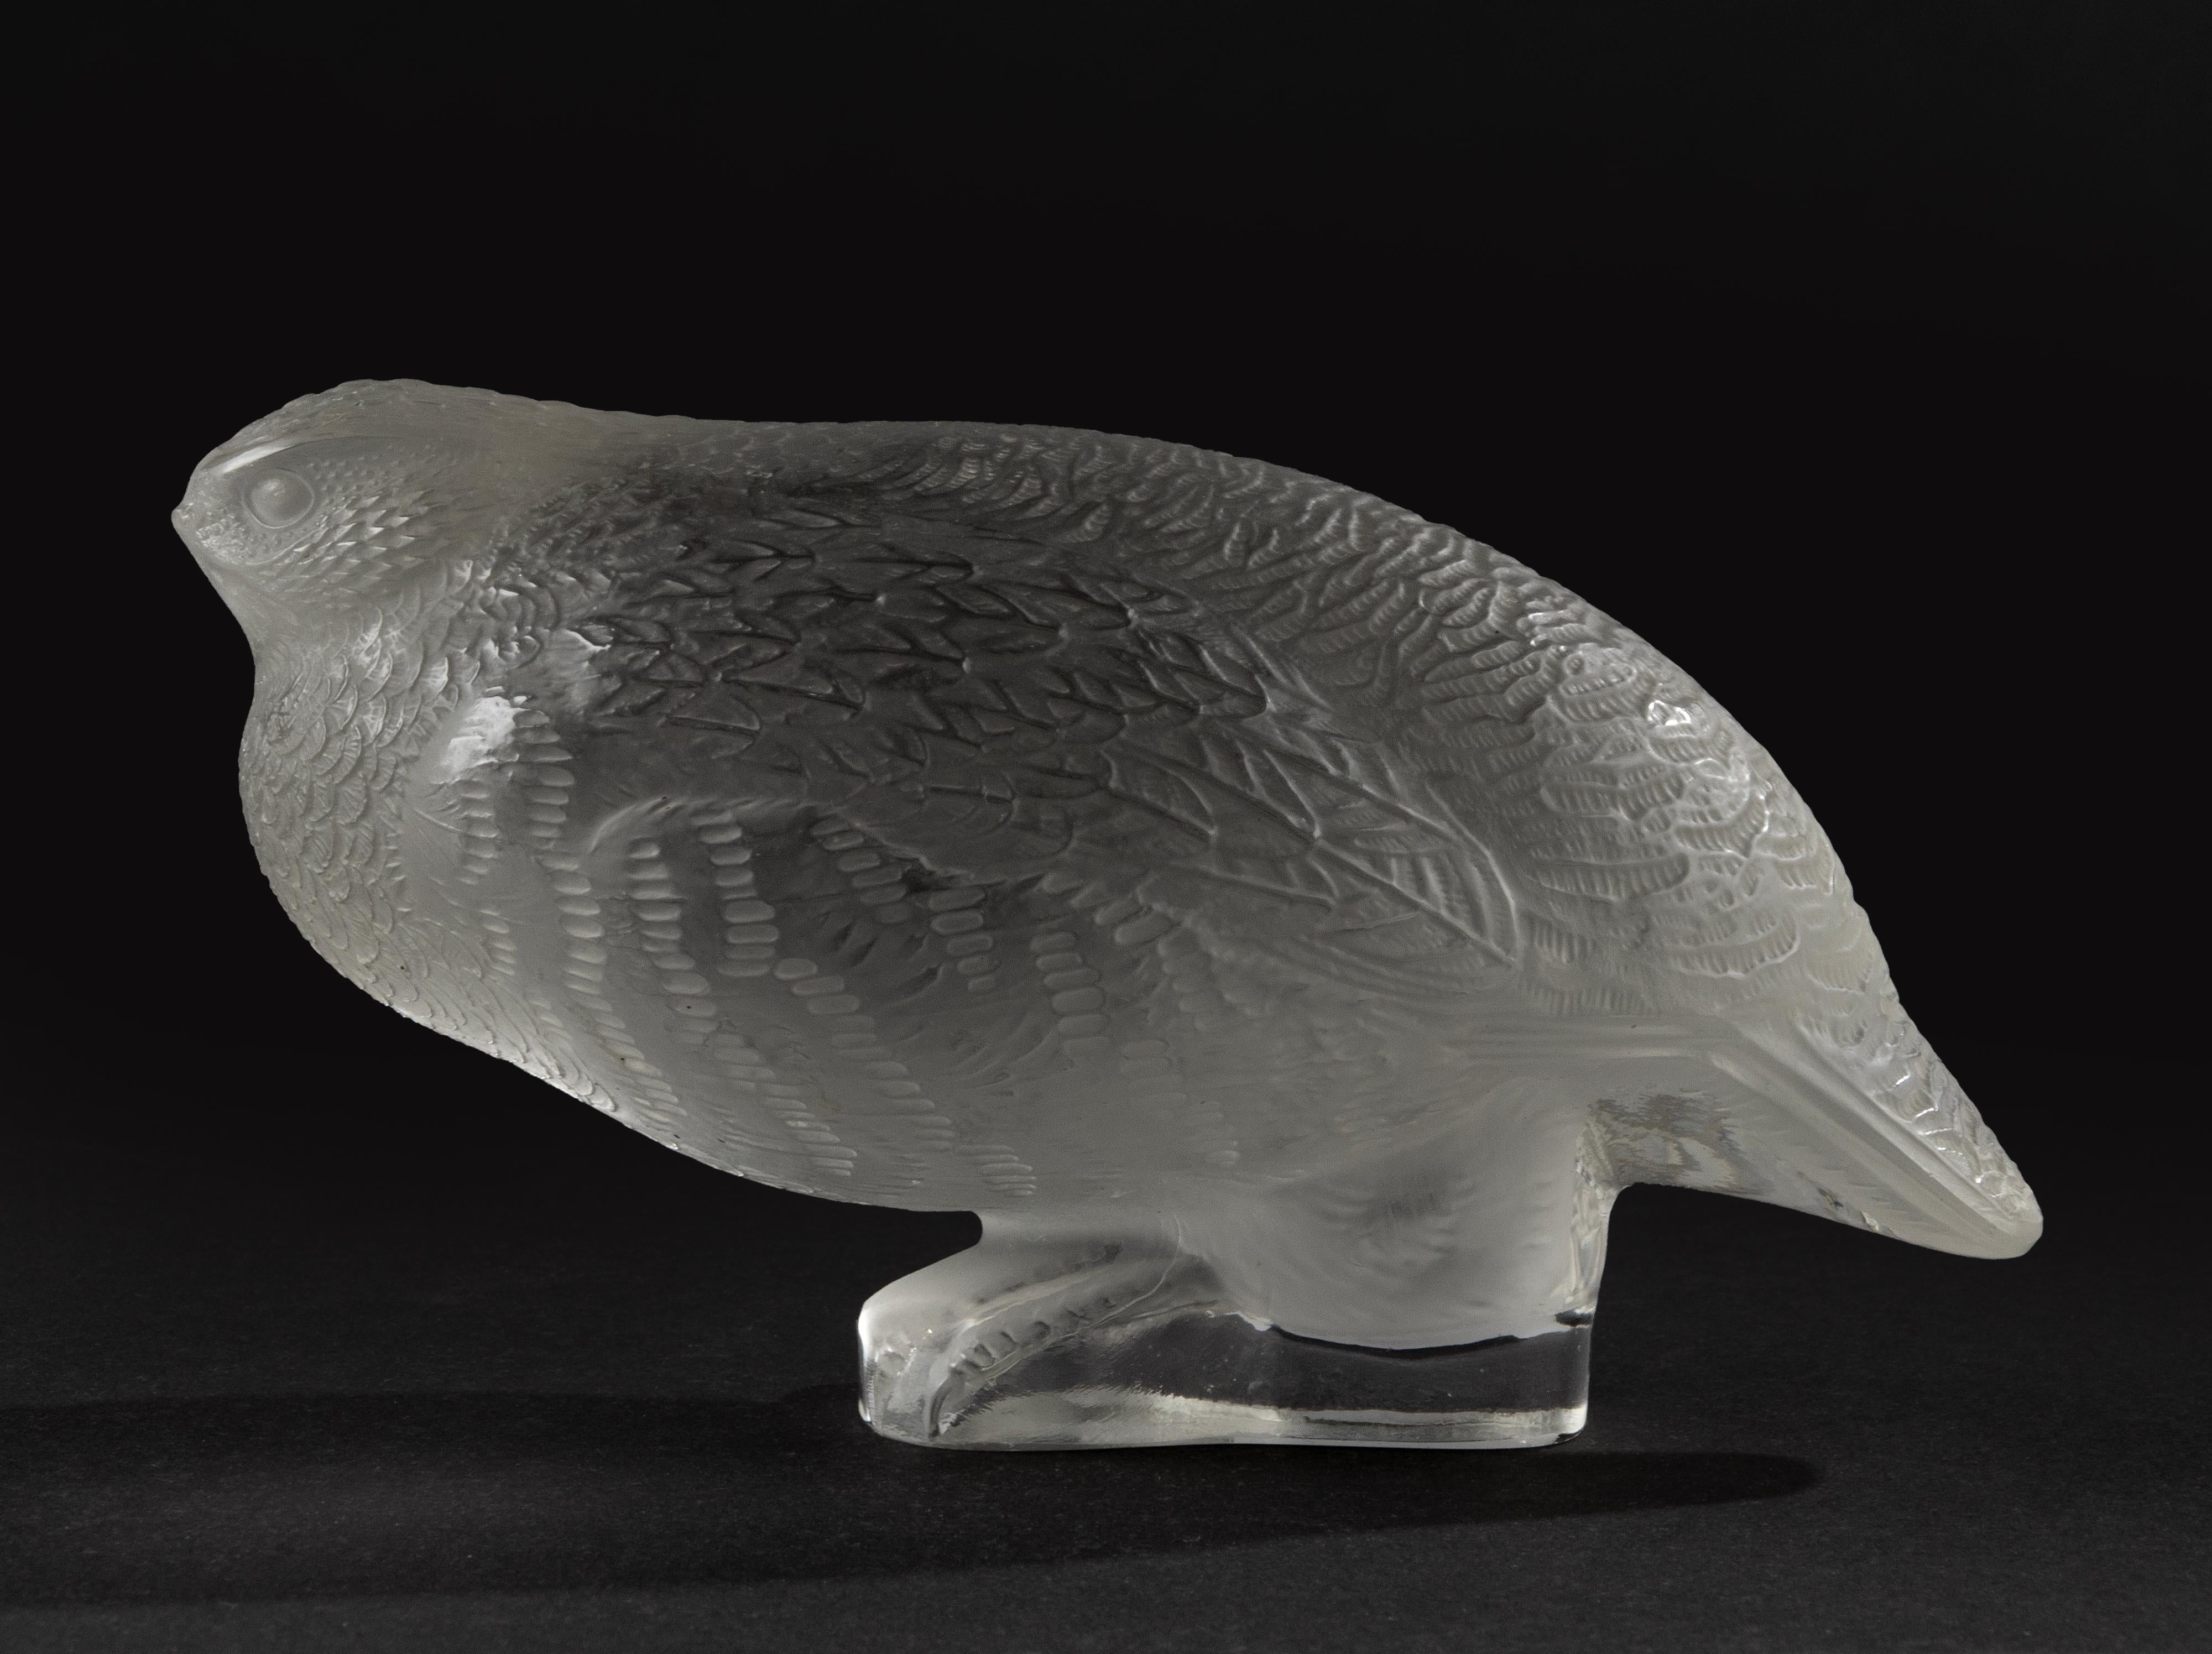 Magnifique figurine en cristal ou presse-papiers représentant un oiseau caille, en cristal dépoli. Marqué sur le fond 